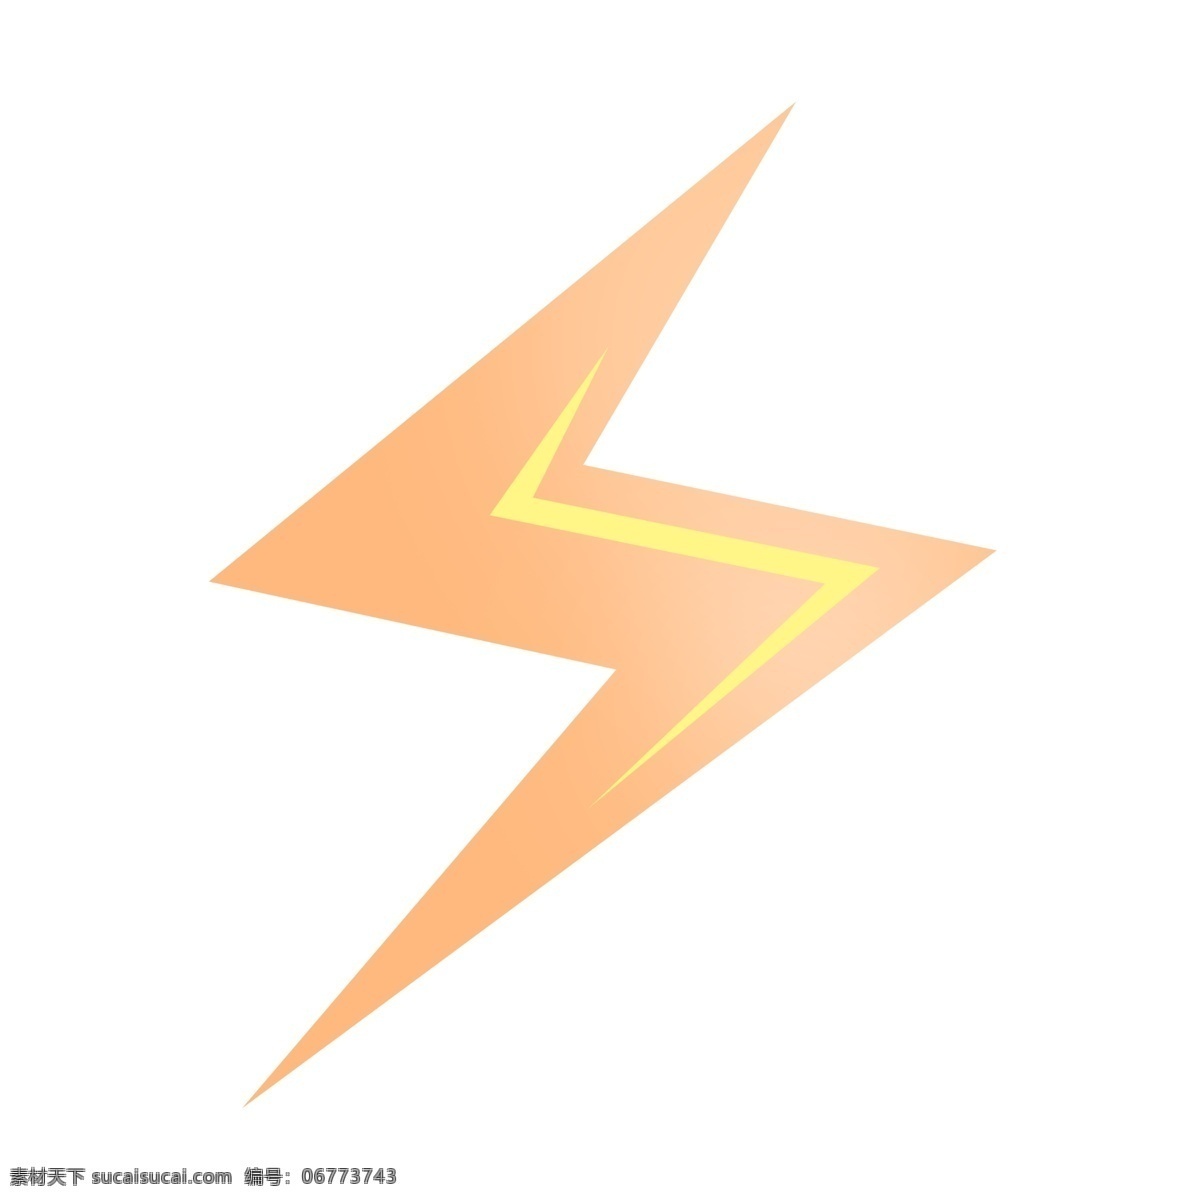 闪电 图案 免 扣 闪电效果 海报设计图标 闪电图案 装饰图案 黄色闪电